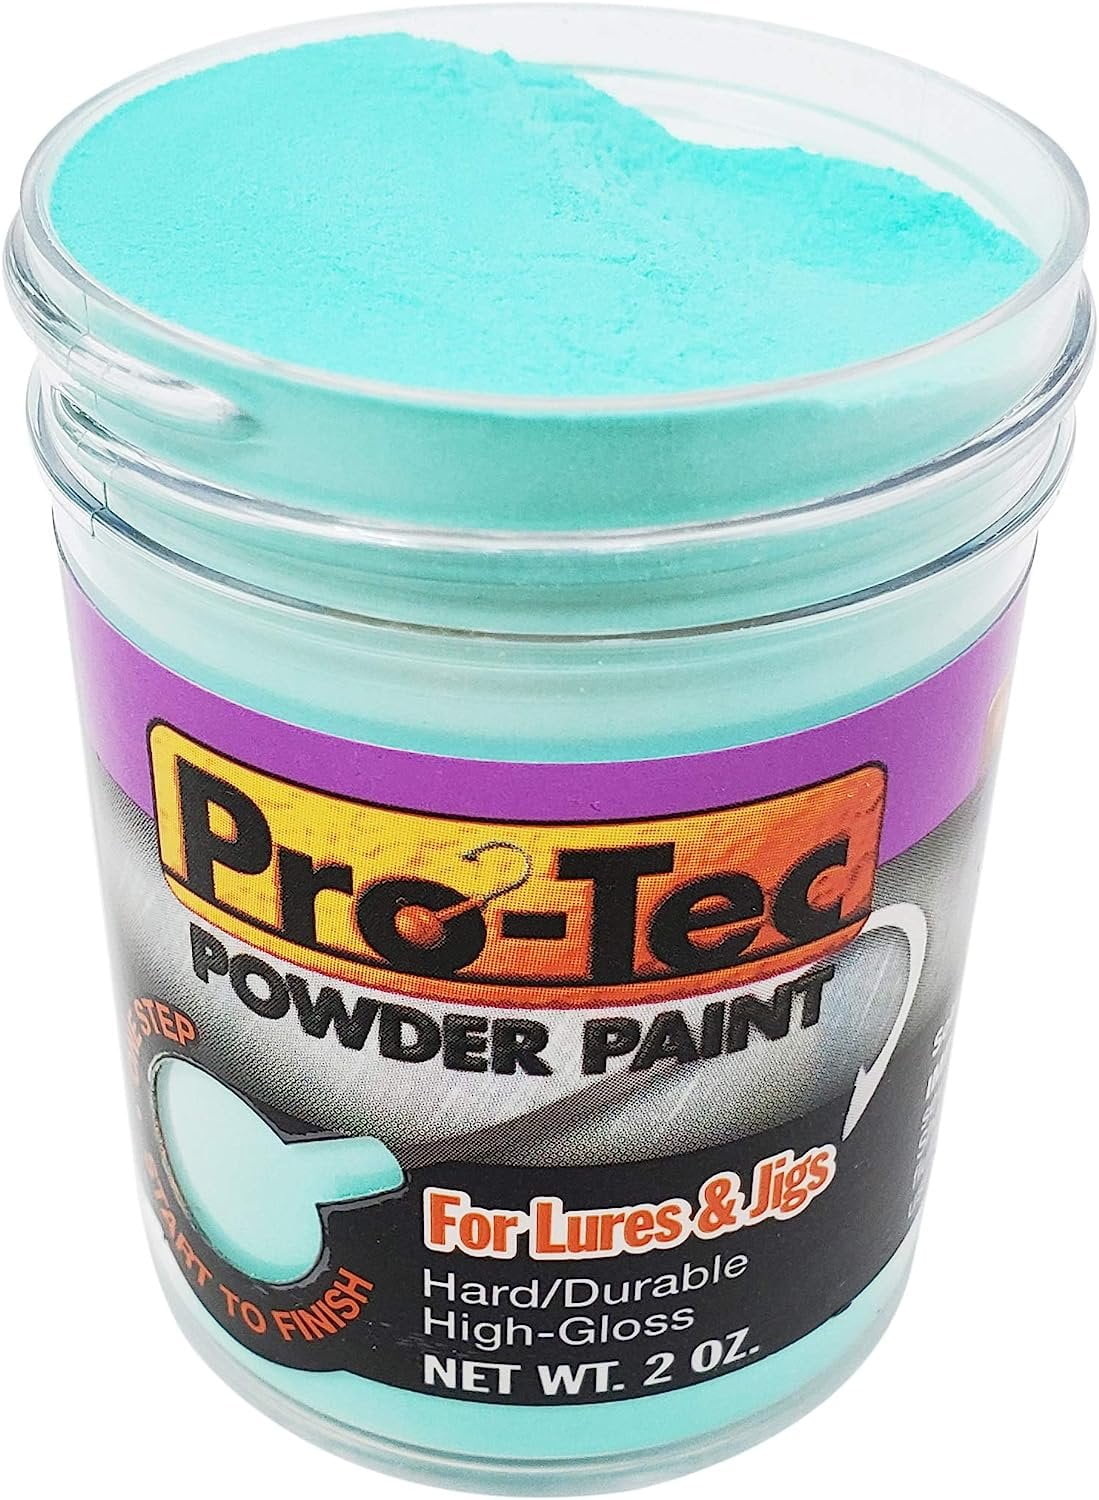 Component Pro Tec Powder Paint 2oz Green Pumpkin, Jigs -  Canada